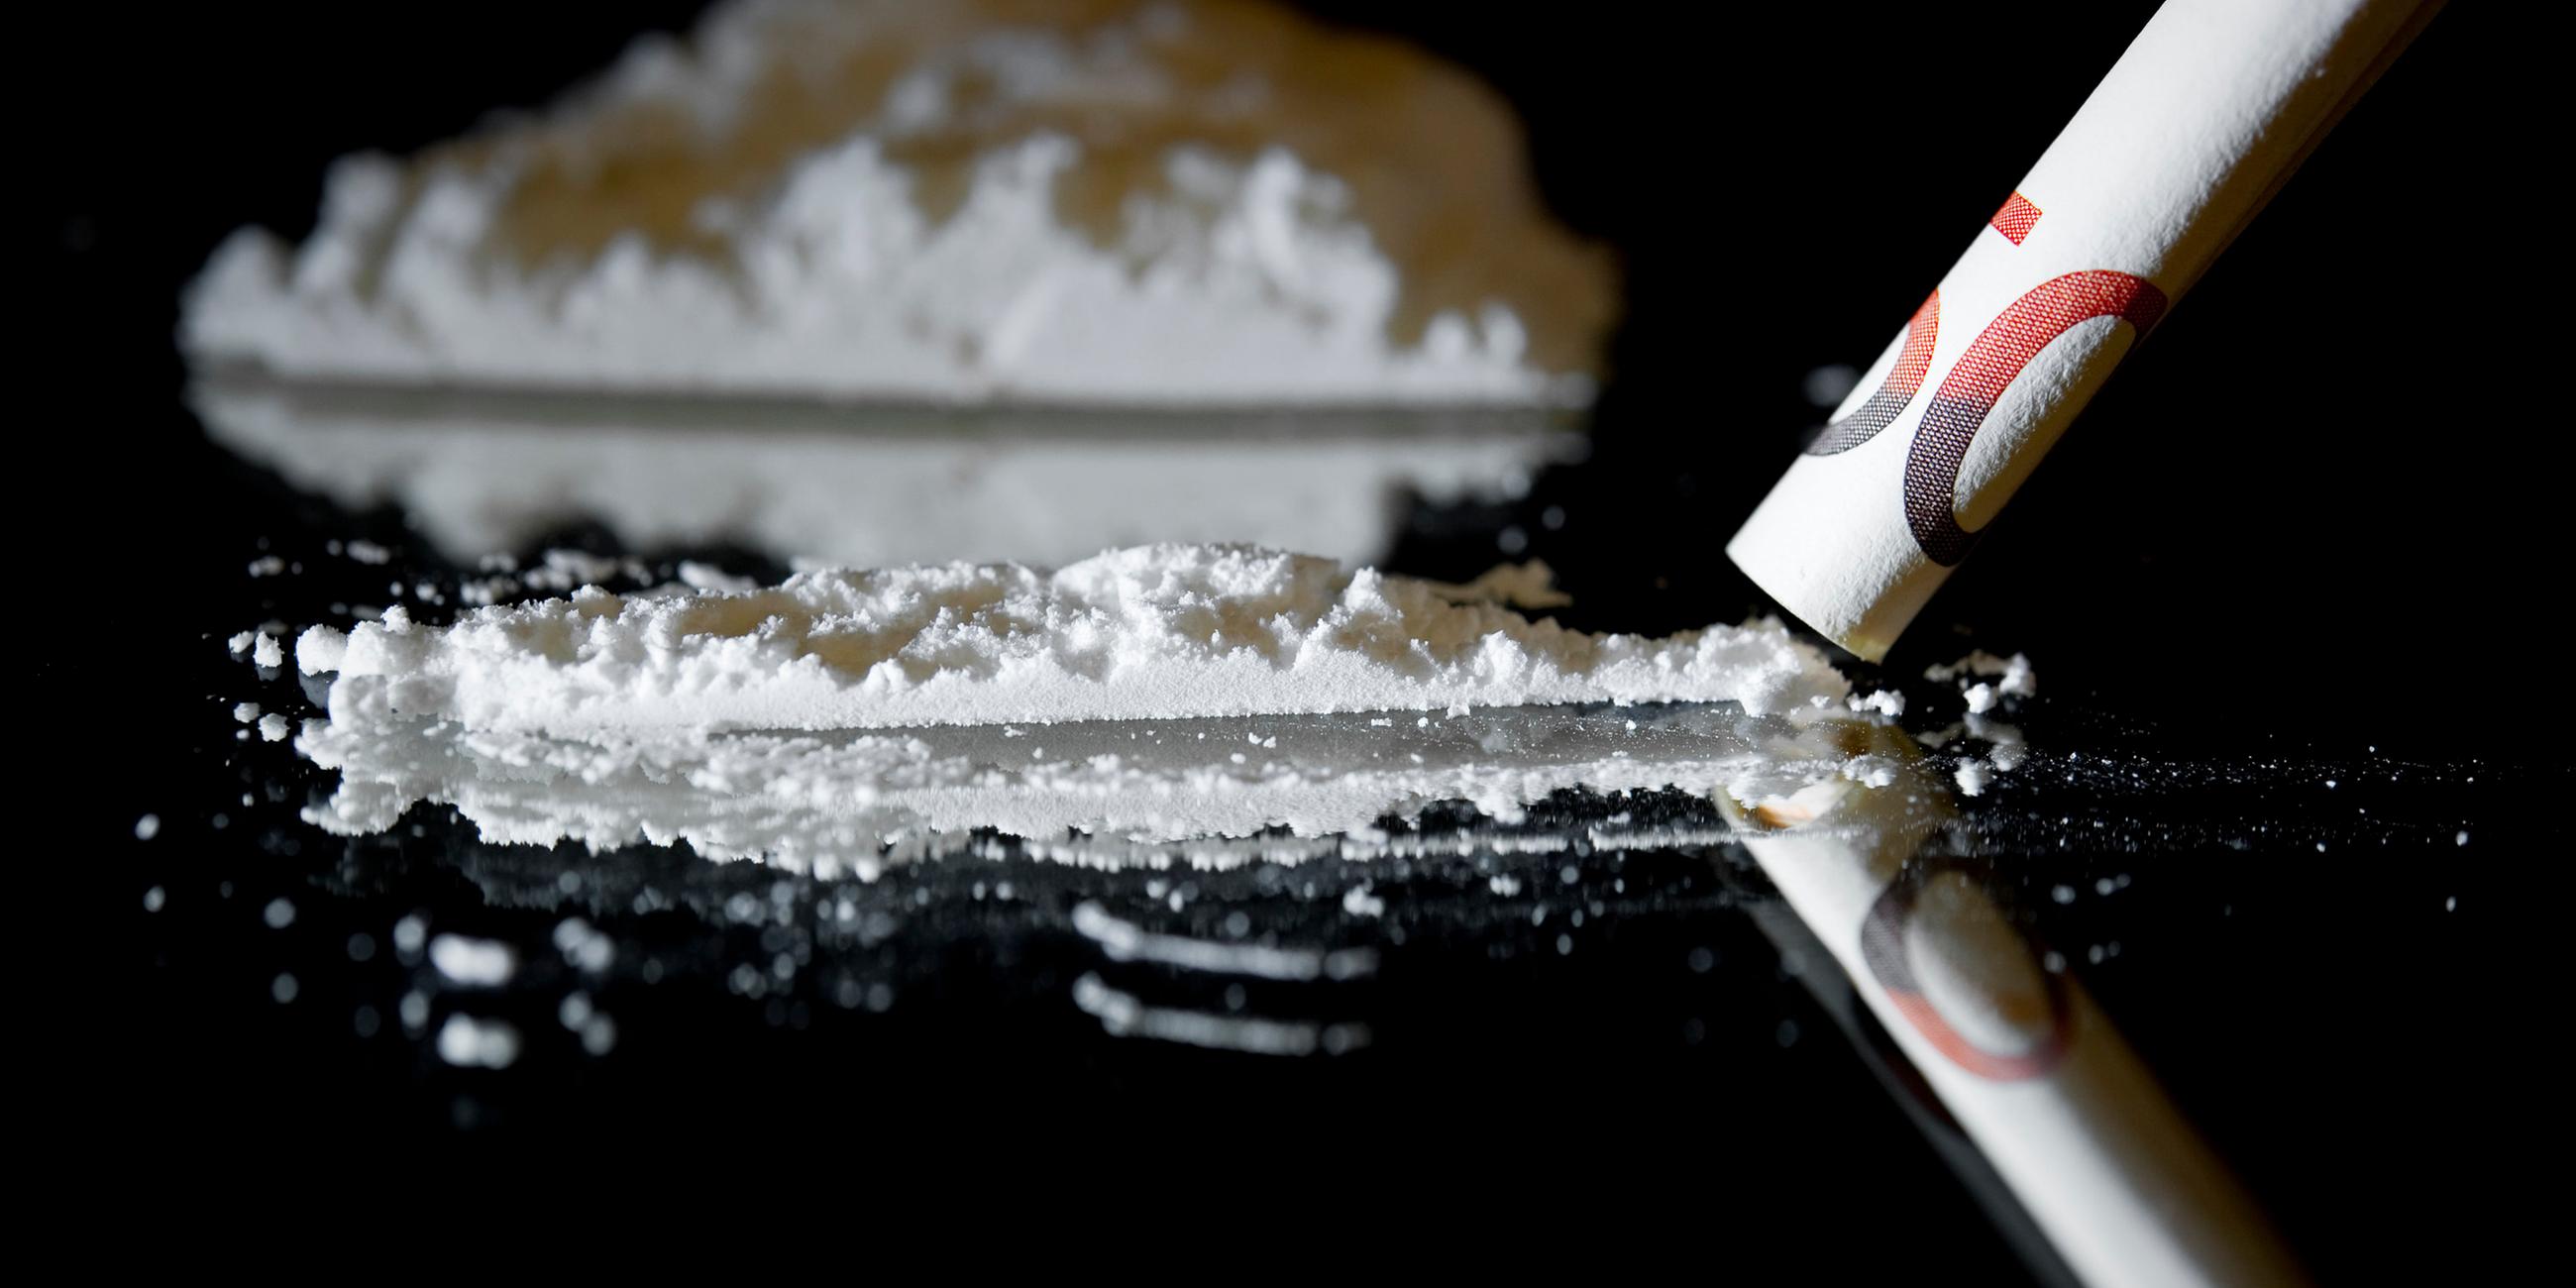  mit einem zusammengerollten 50-euro-geldschein wird am 27.03.2012 in bamberg (oberfranken) ein weisses pulver, das kokain darstellen soll, symbolisch konsumiert.